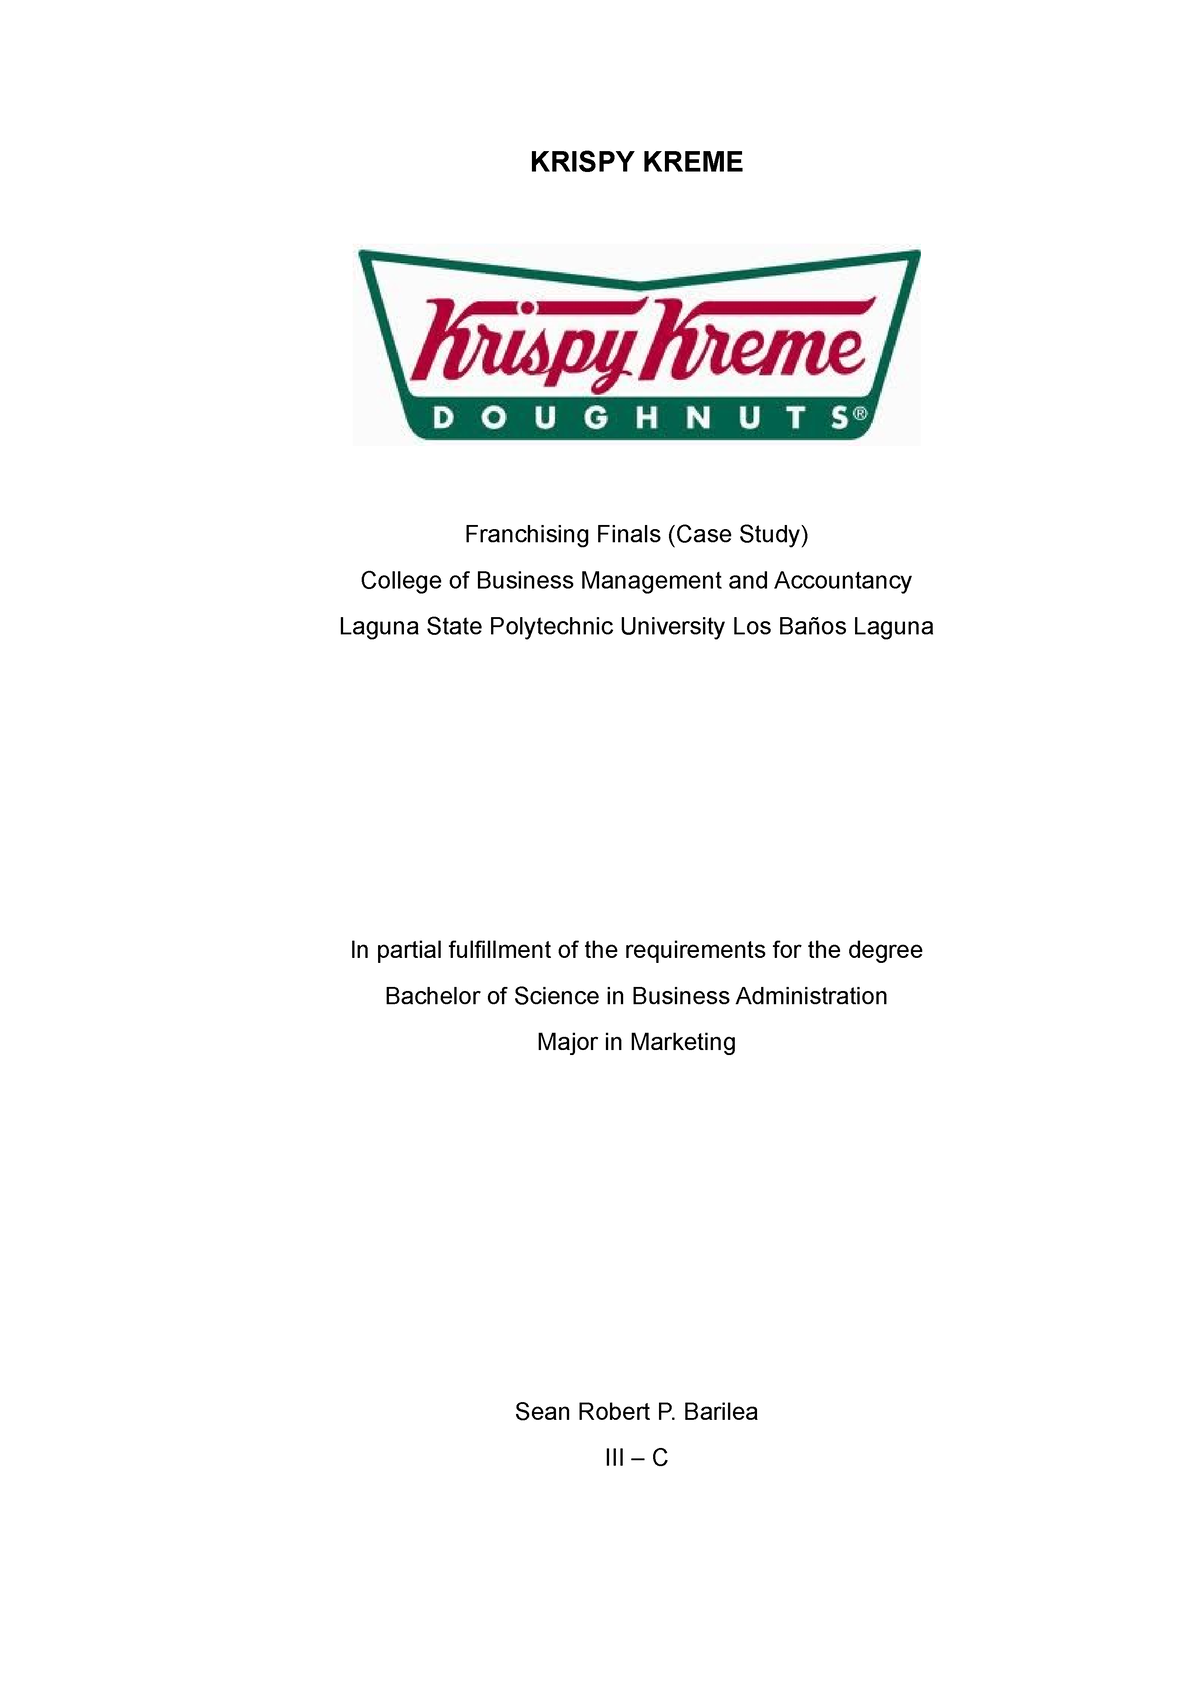 krispy kreme case study pdf